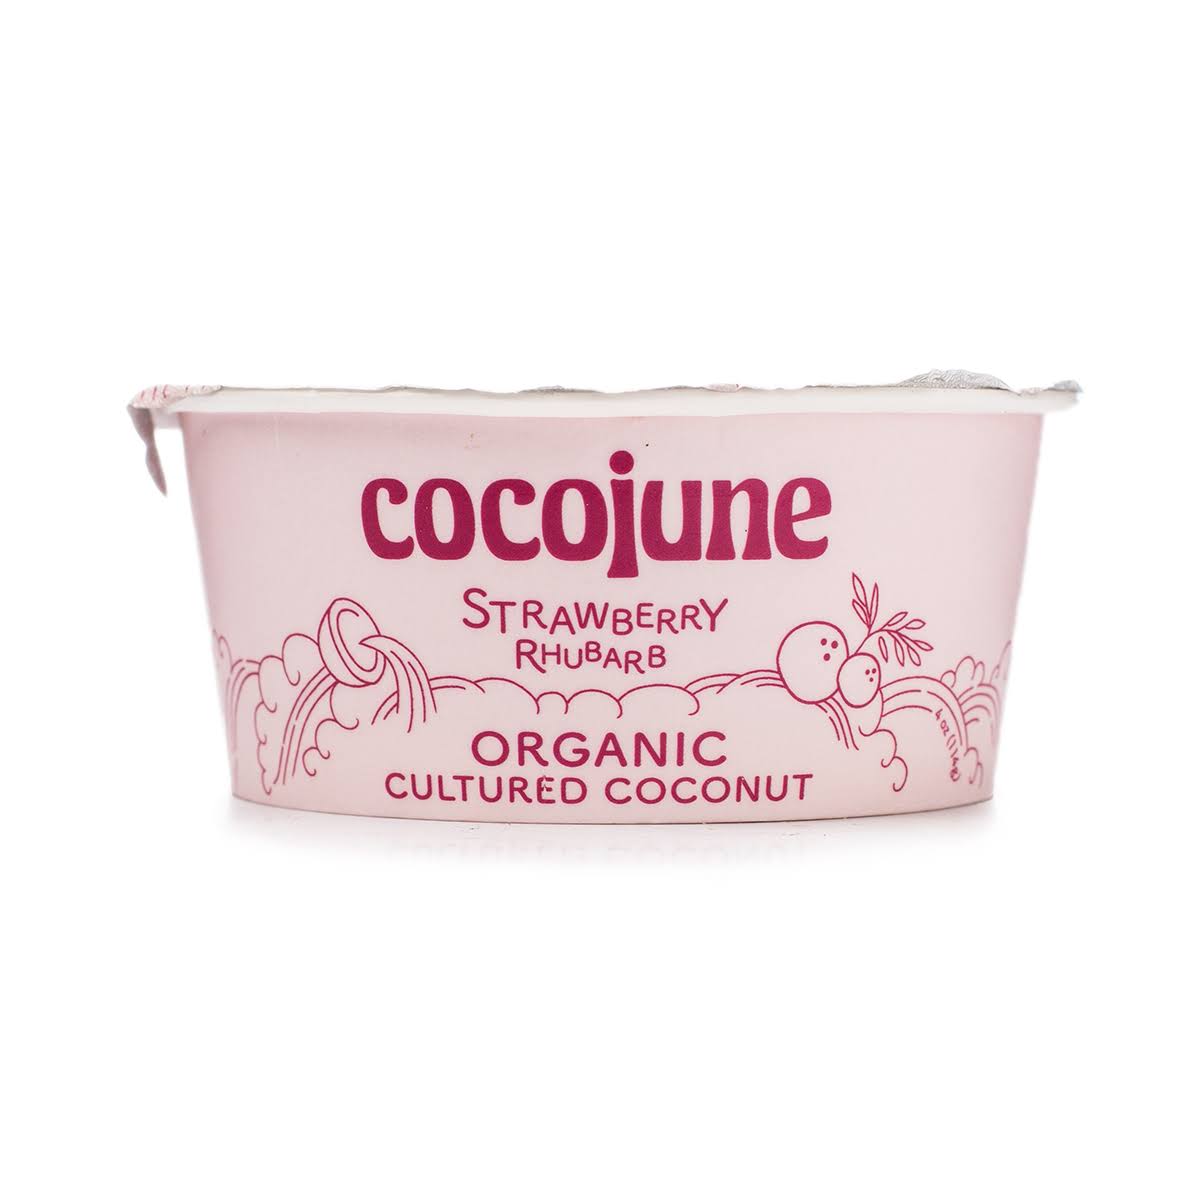 Cocojune Cultured Coconut, Organic, Strawberry Rhubarb - 4 oz